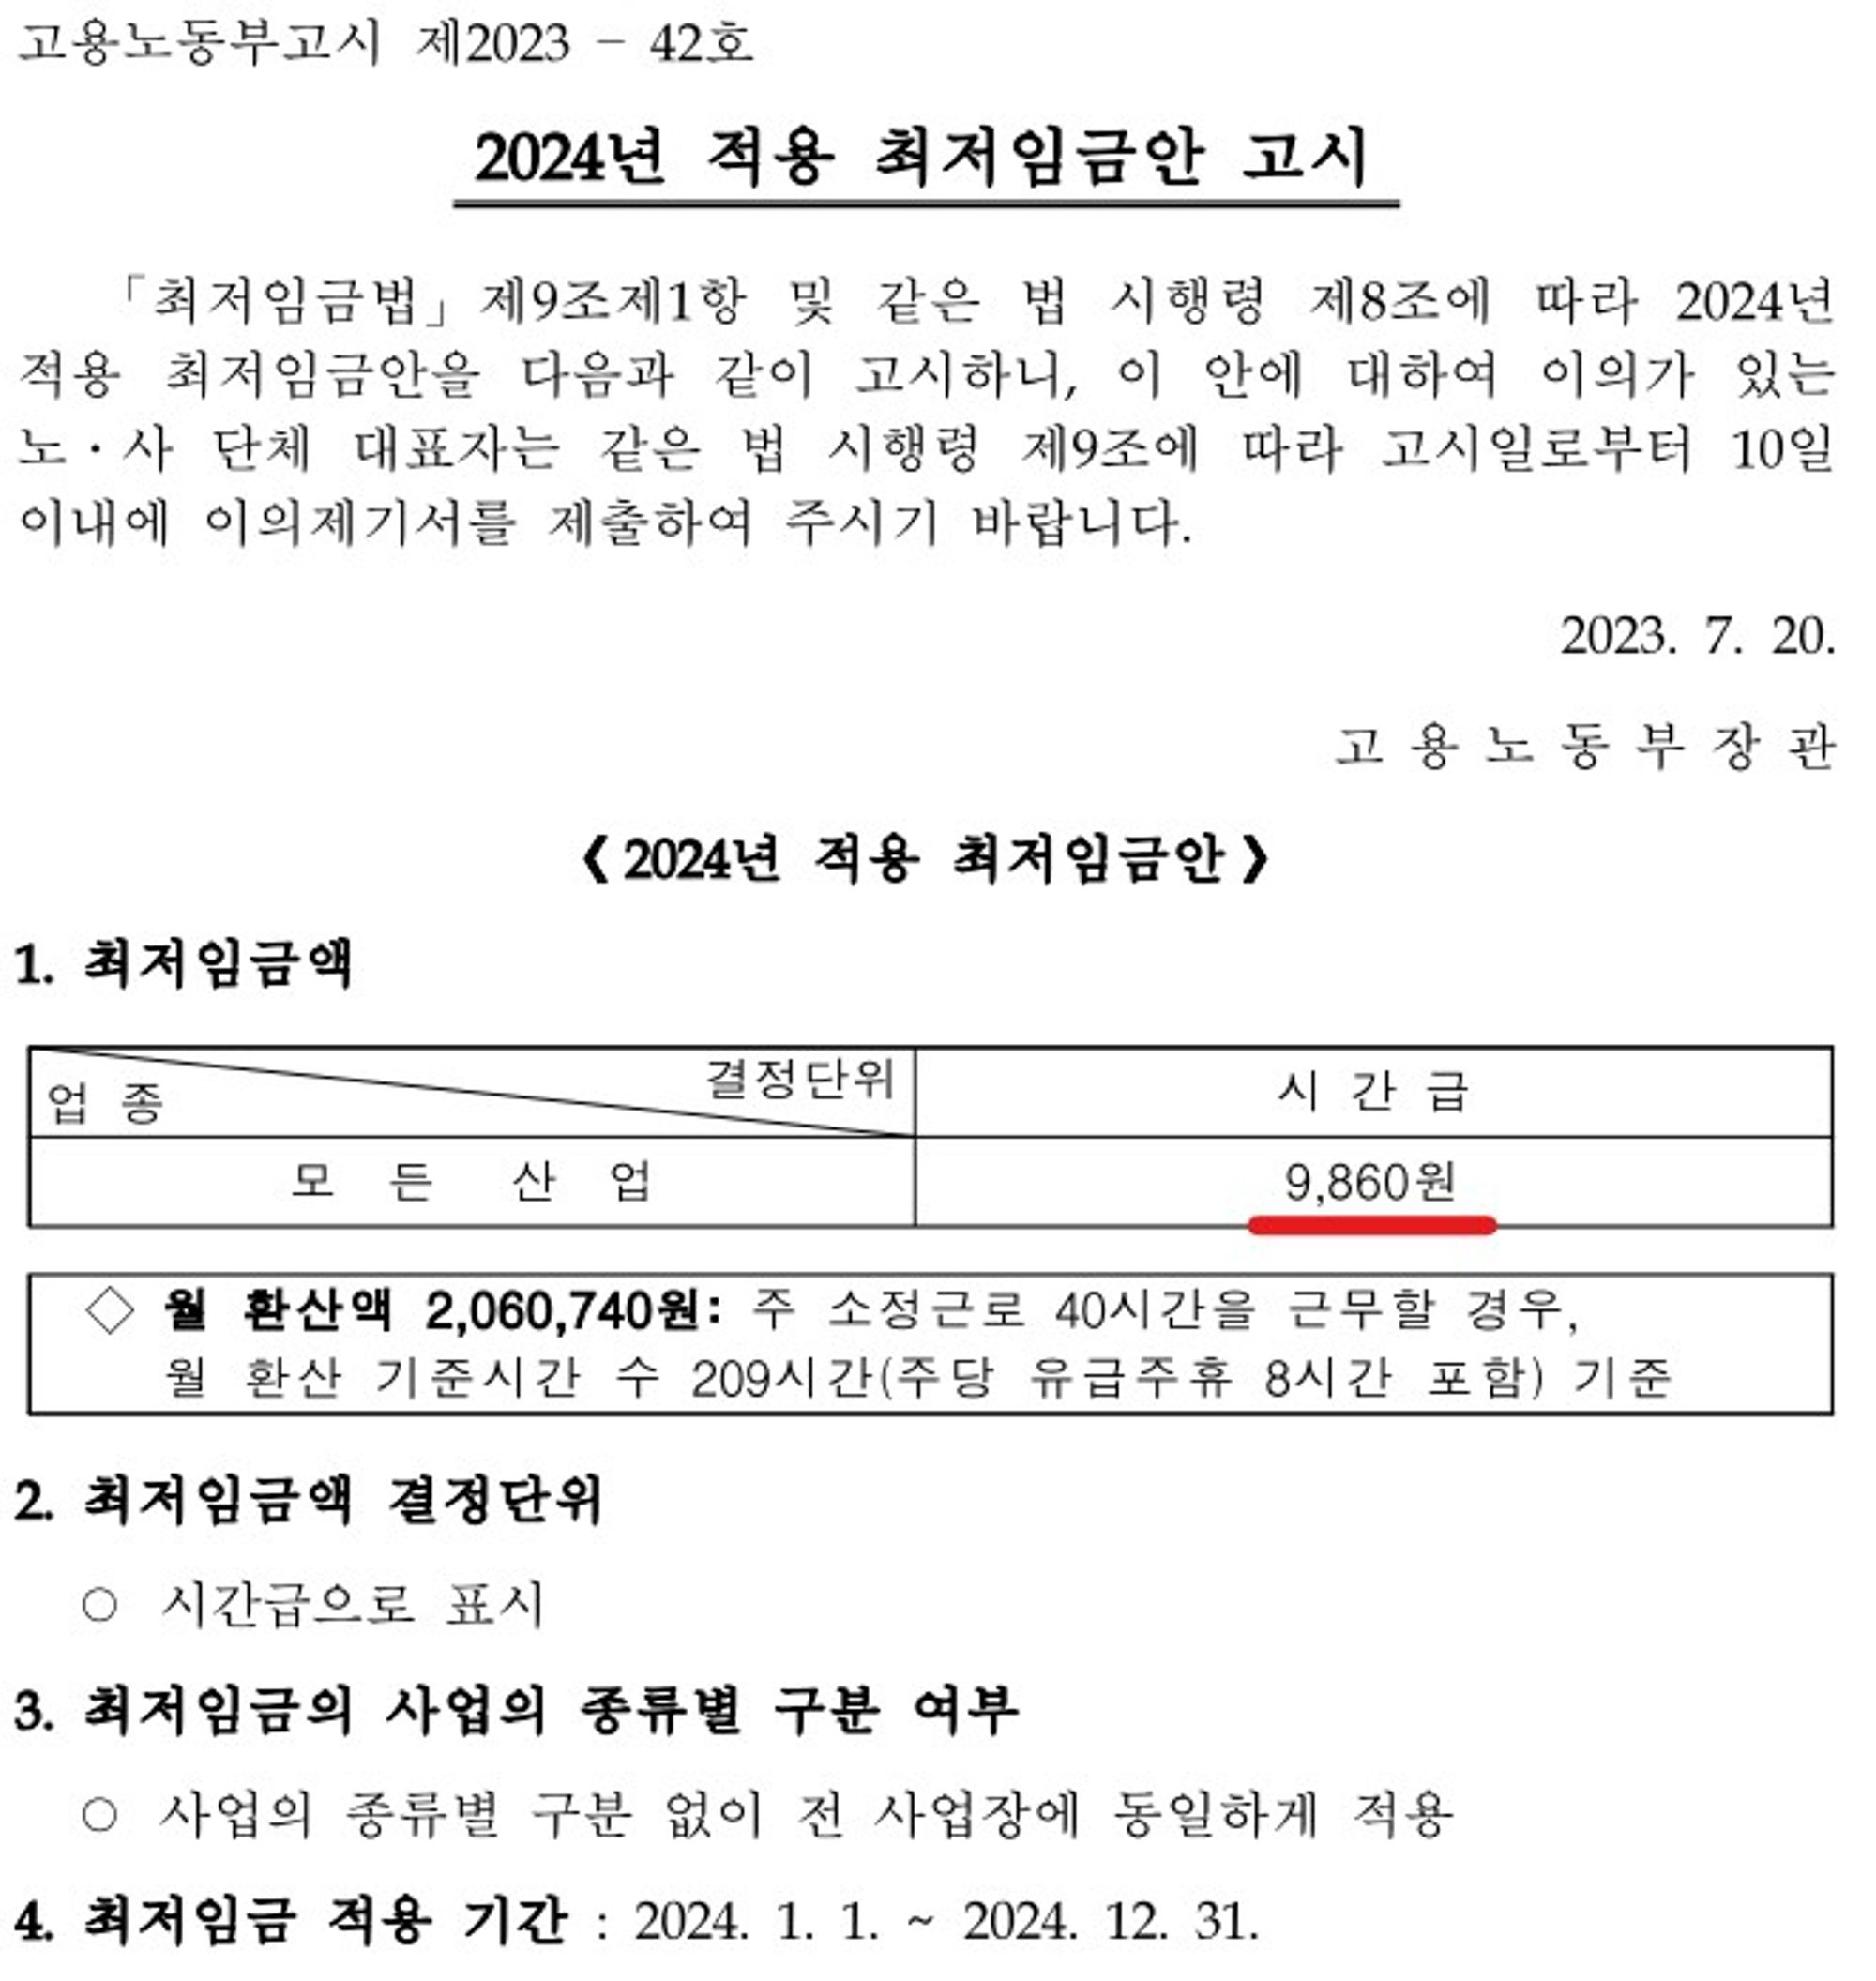 <고용노동부고시 제 2023-42호 / 2024년 최저시급>